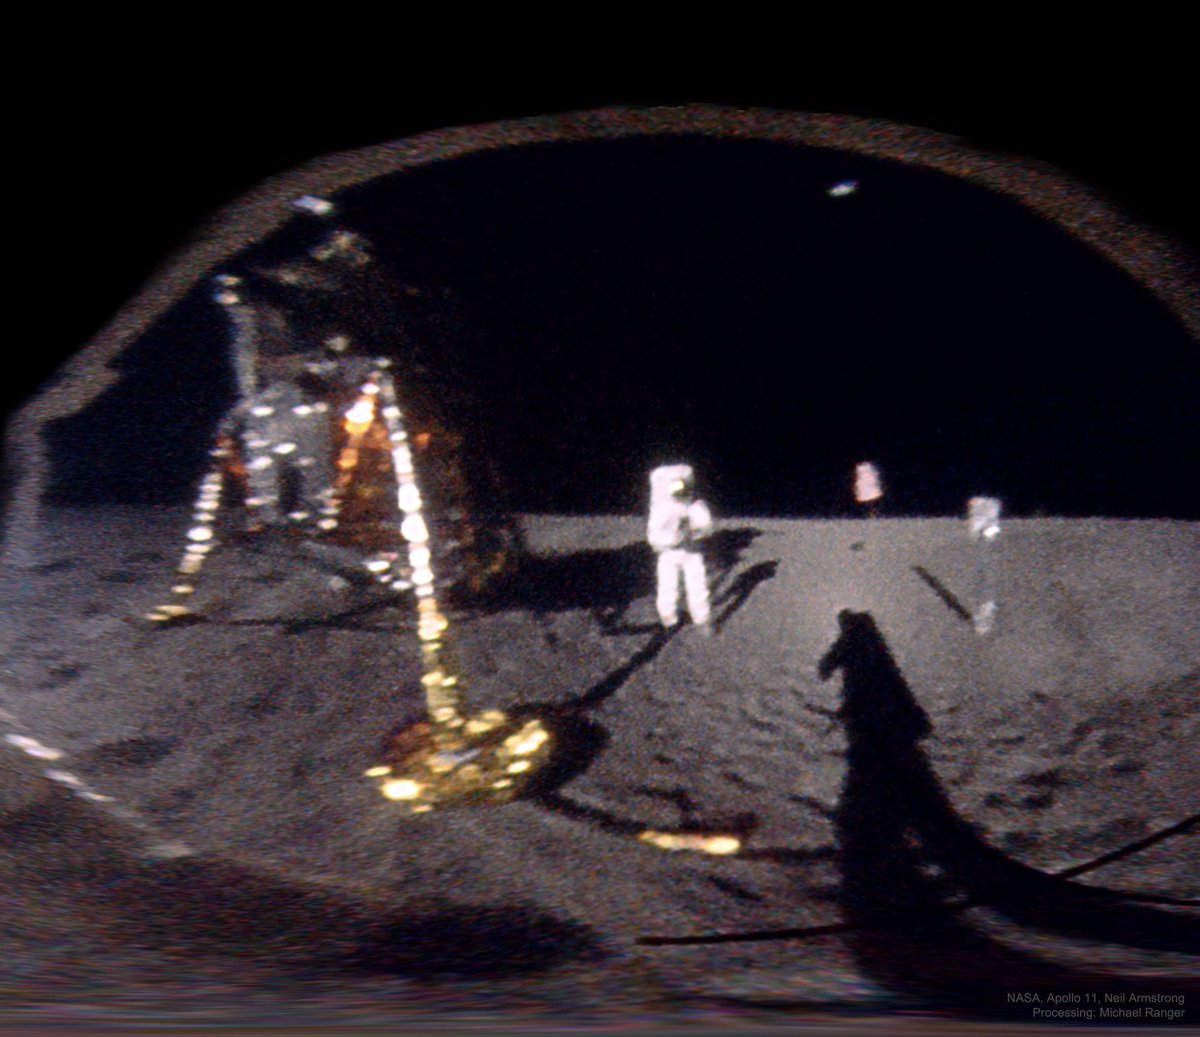 Le 20/07/1969, Neil Armstrong prenait en photo Buzz Aldrin lors de leur sortie extravéhiculaire à la surface de la Lune. On voit très bien le reflet d'Armstrong dans le casque d'Aldrin Ce reflet a été inversé pour reproduire ce qu'Aldrin voyait lorsqu'il a été pris en photo 1/2